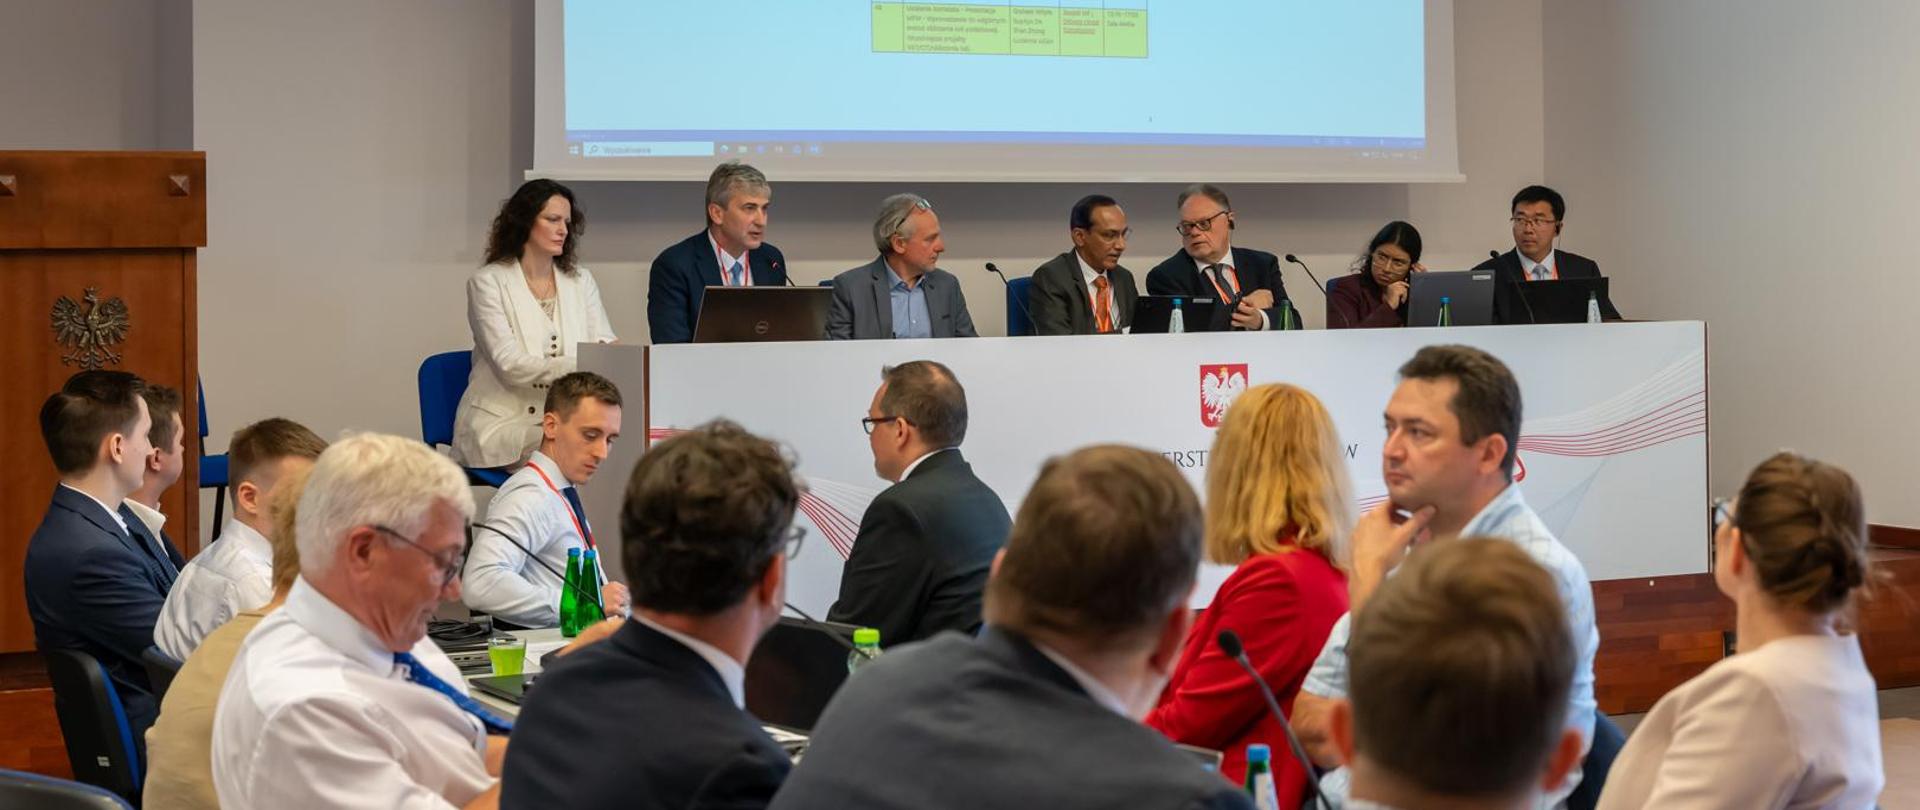 Wiceminister finansów Jarosław Neneman podczas spotkania misji Międzynarodowego Funduszu Walutowego, siedzi za stołem z innymi prelegentami, z przodu siedzą inni uczestnicy spotkania